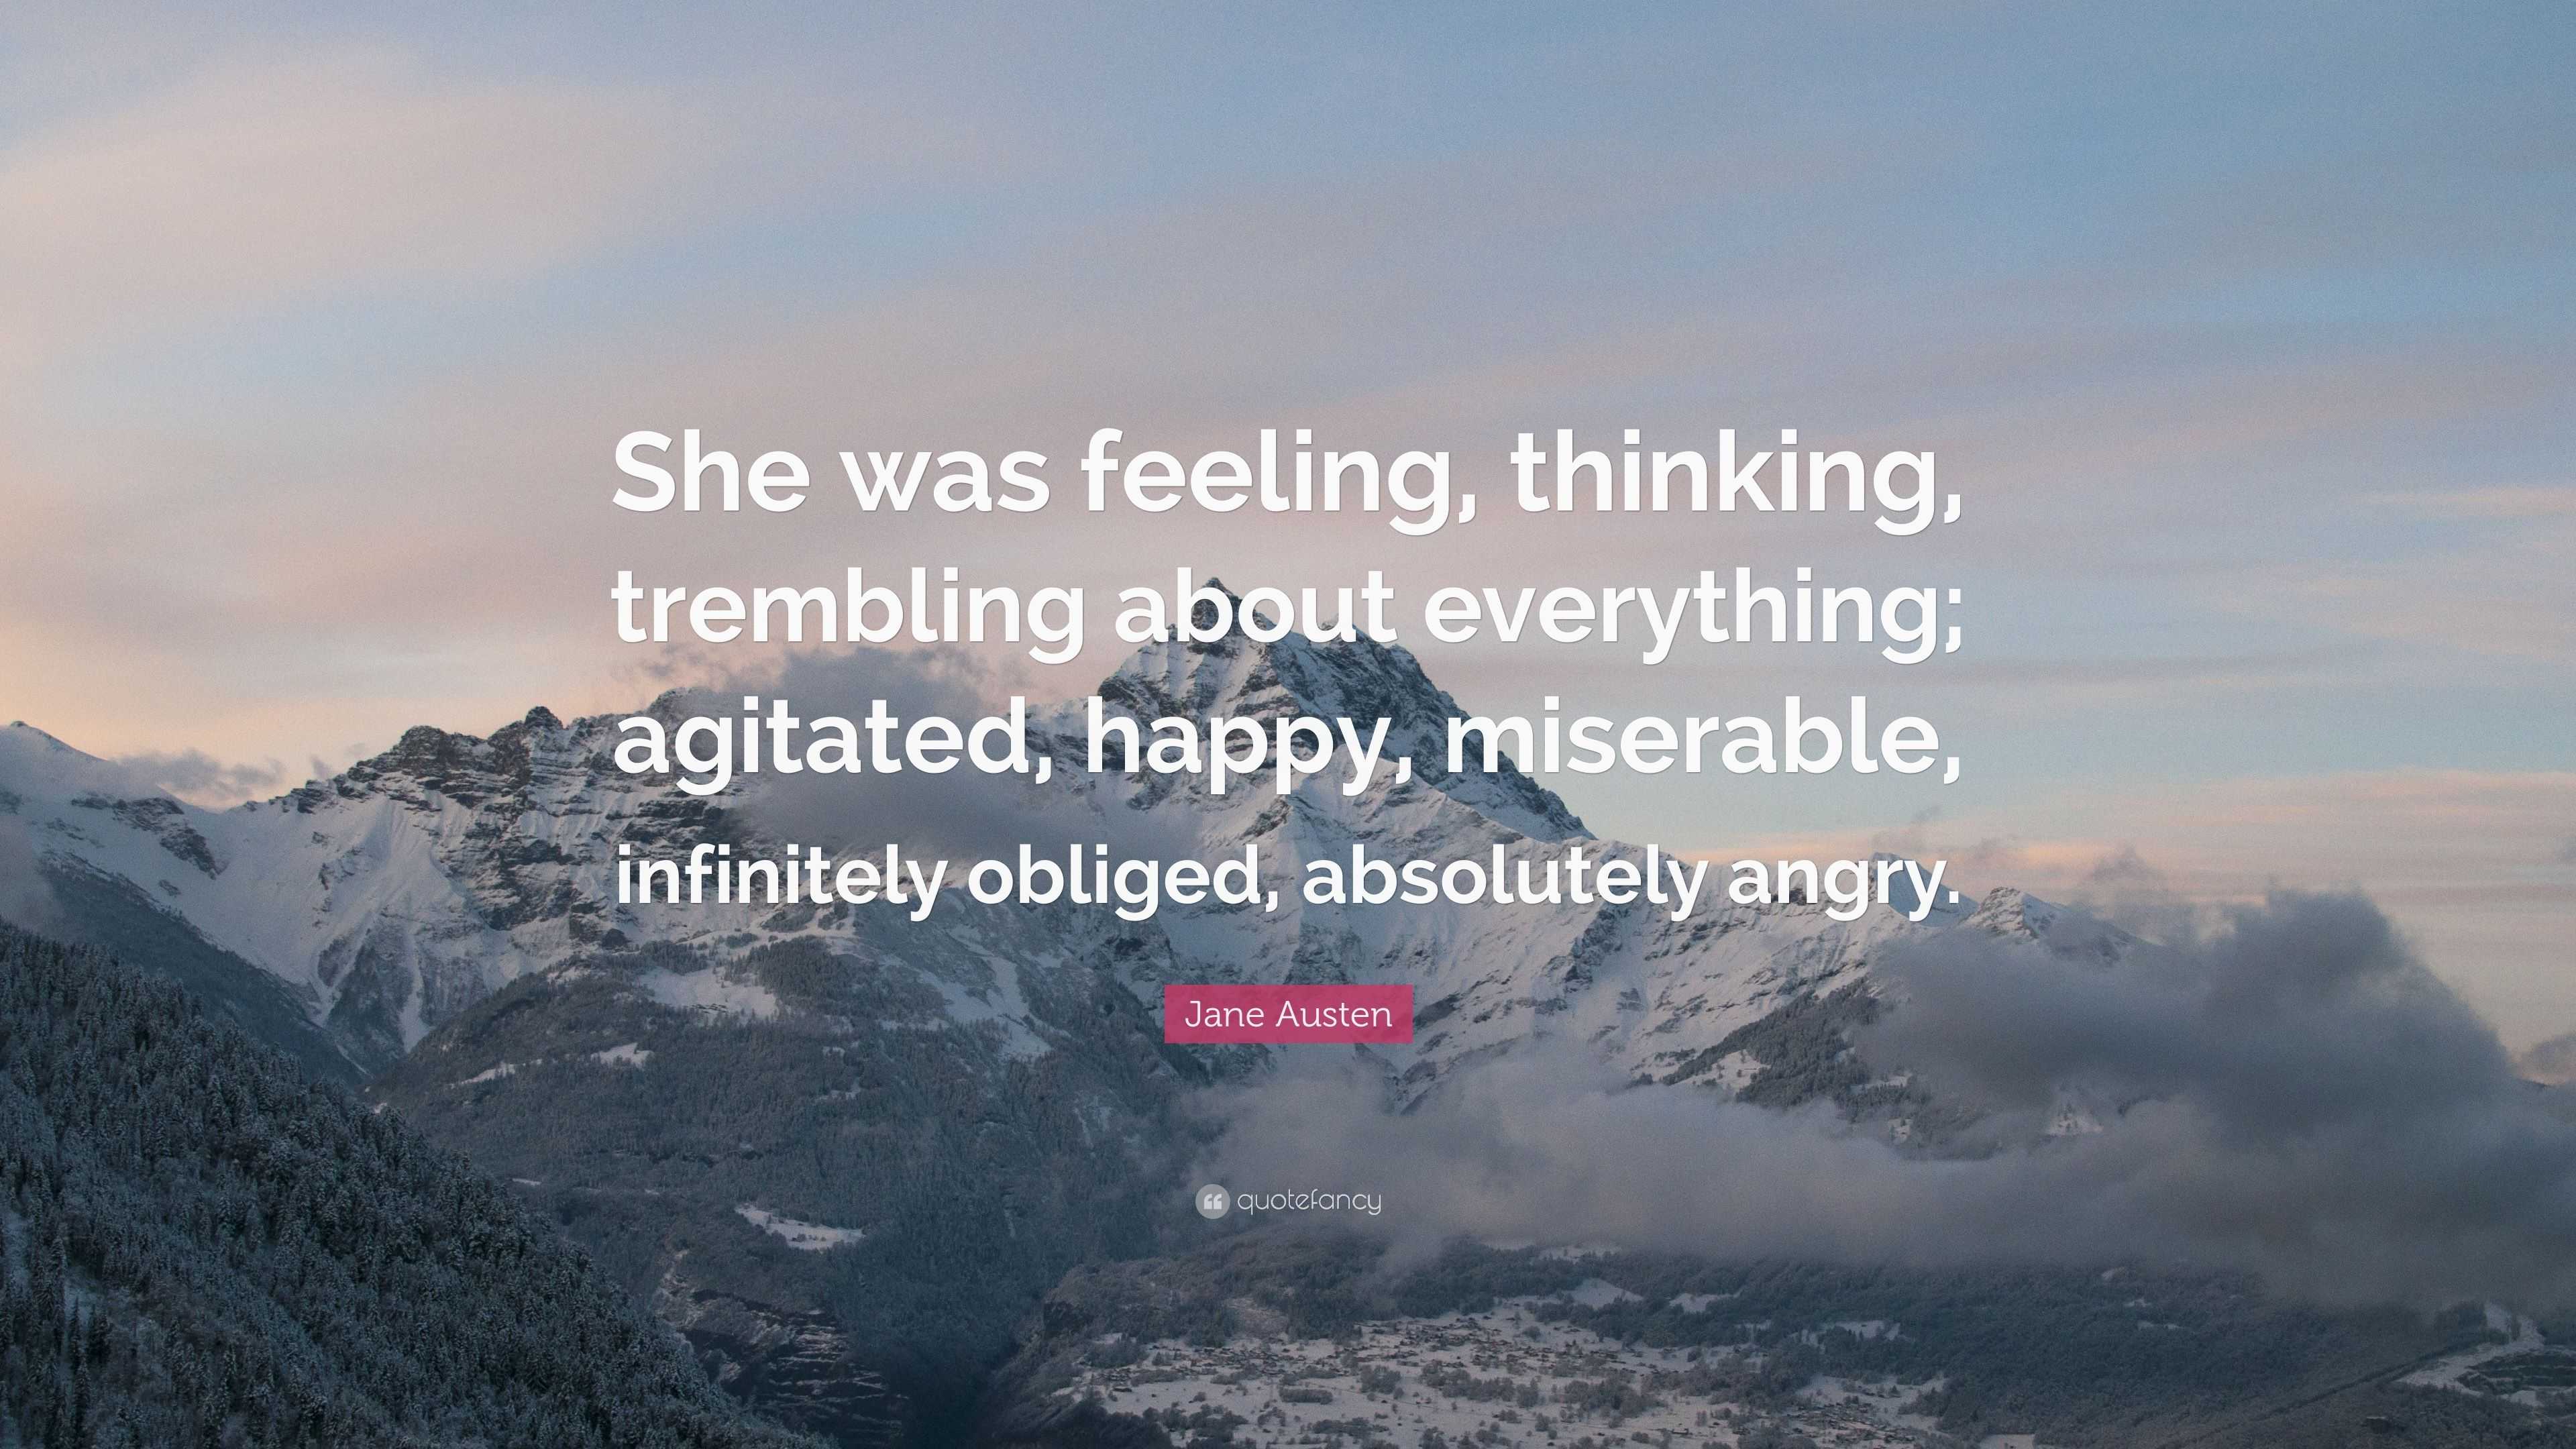 How Does Jane Austen Create Negative Feelings